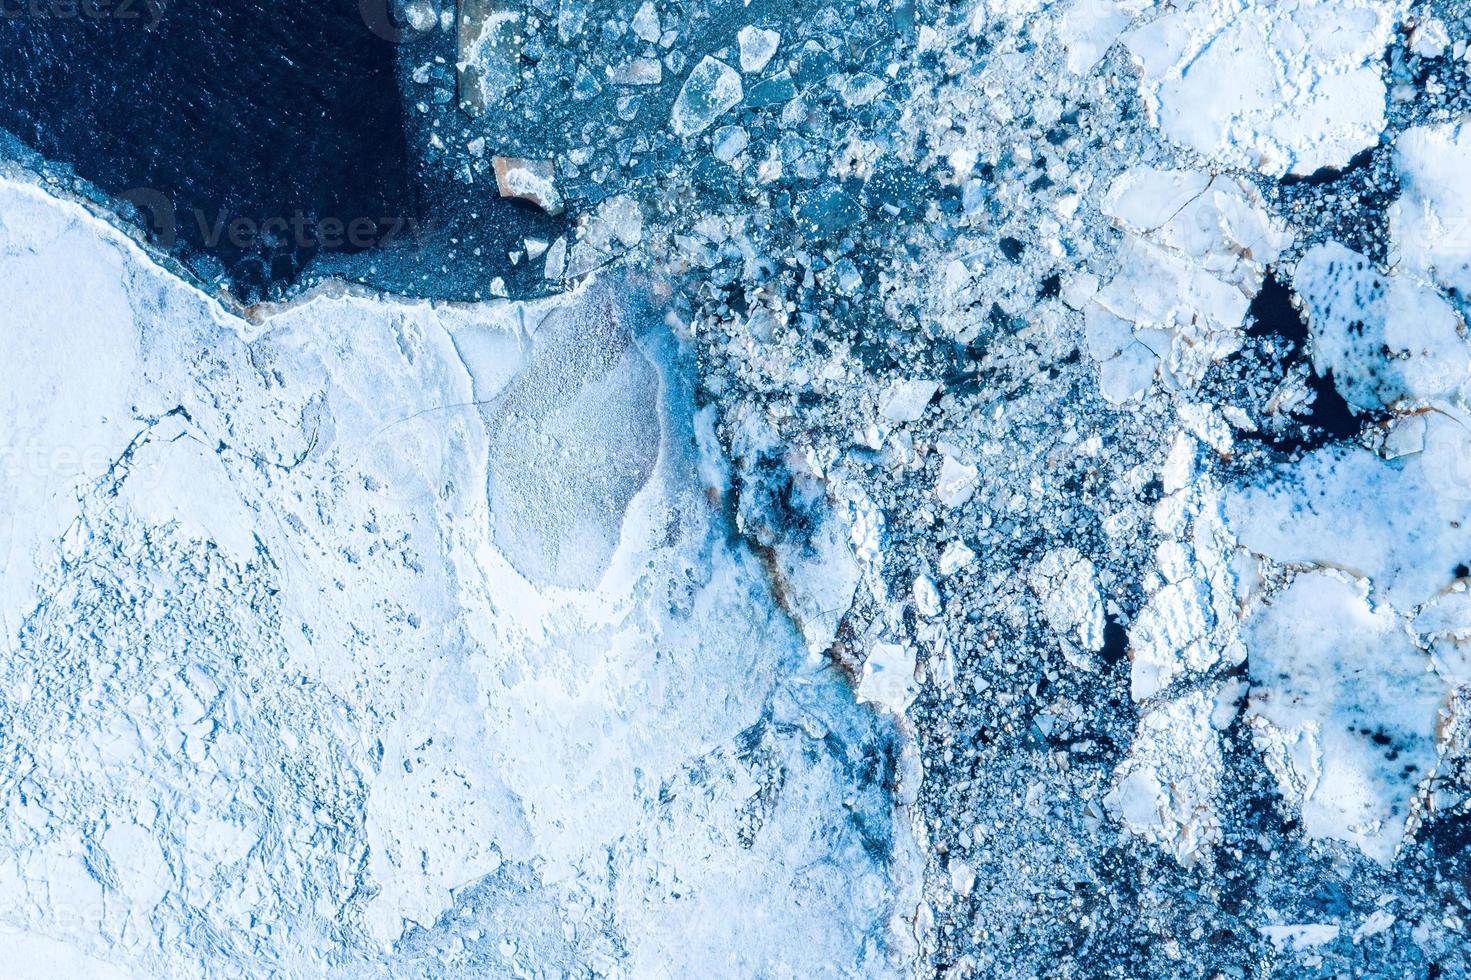 grote brokken ijsblokken die een prachtig patroon vormden, nadat het ijsbrekerschip voorbijkwam en het dicht opeengepakte ijs verpletterde. foto